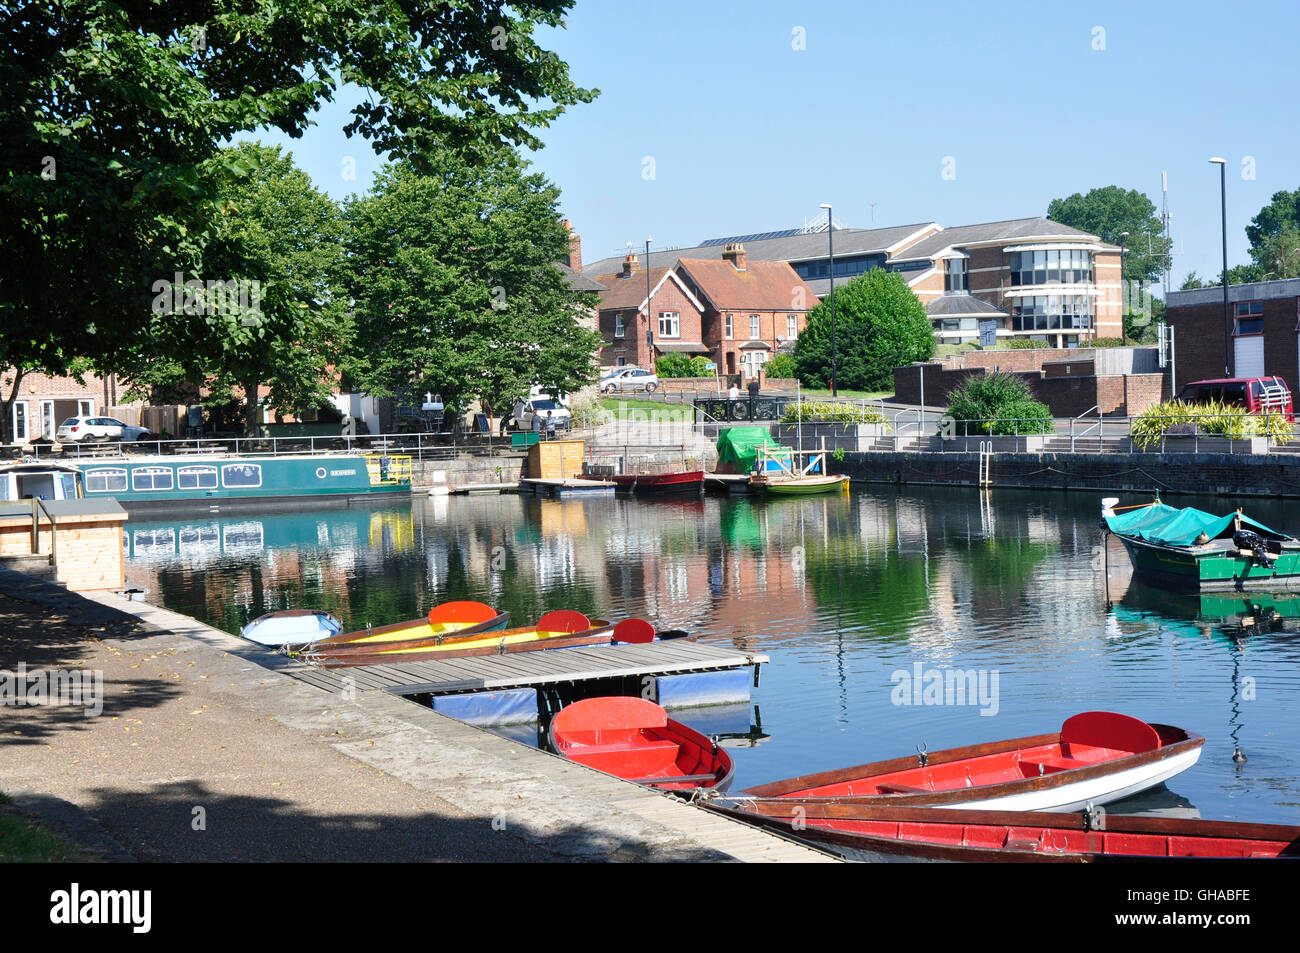 Hampshire - Chichester bacino del canale - colorate barche da diporto ormeggiate - la luce del sole e le ombre - riflessioni-skyline della città sullo sfondo Foto Stock